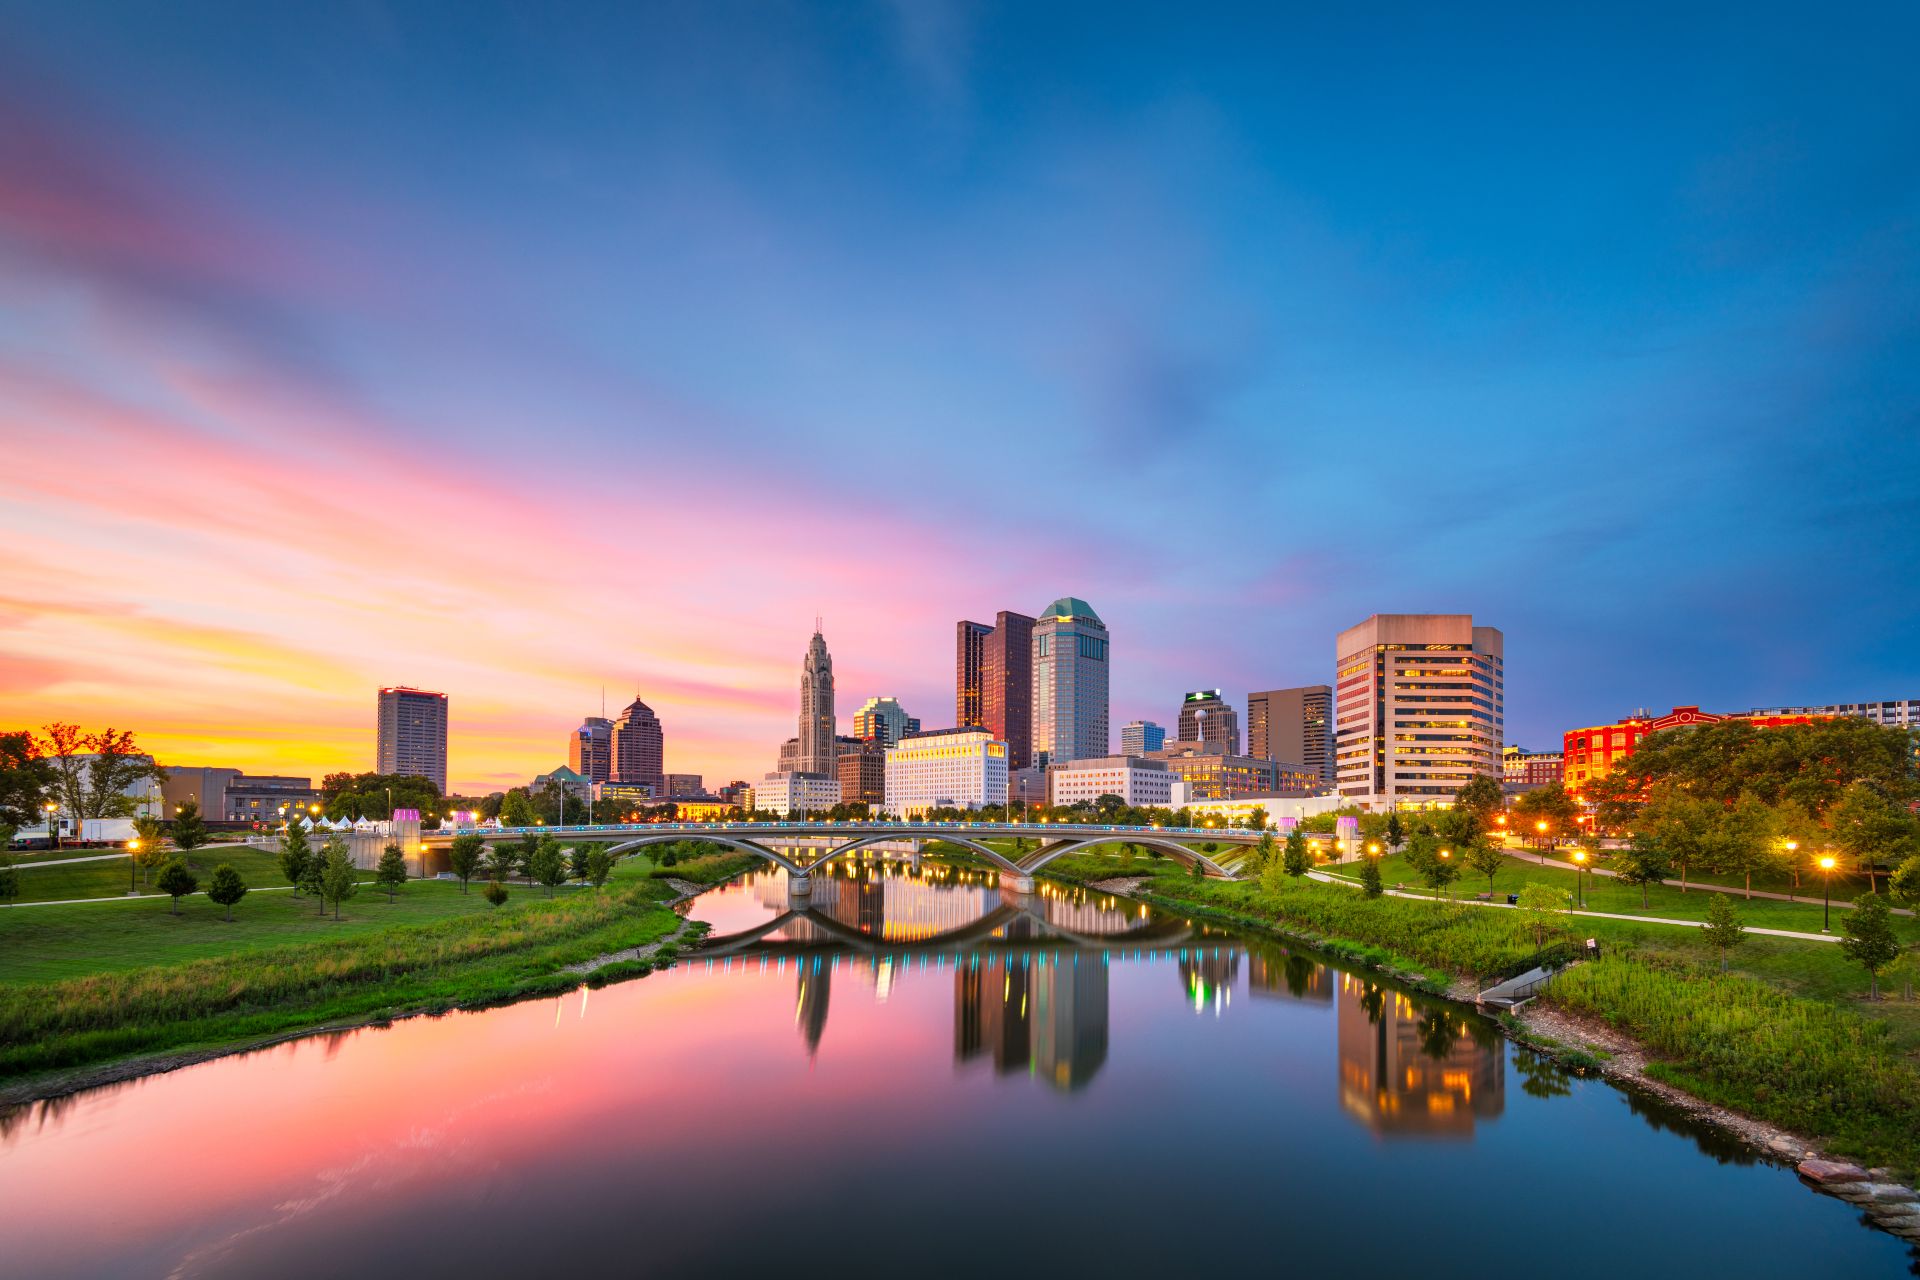 Колумбус, штат Огайо, США на реке на закате солнца